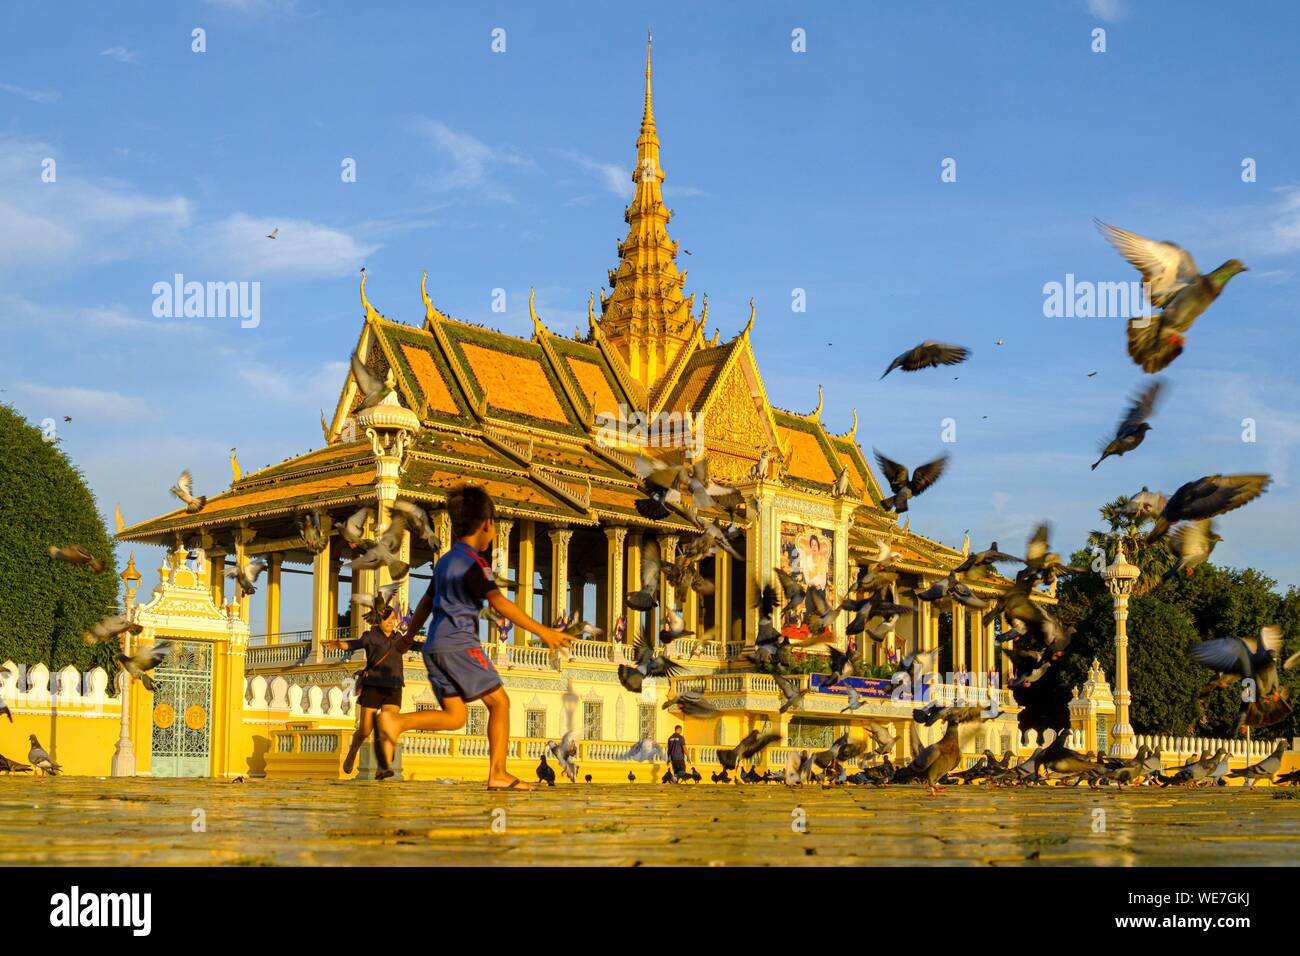 Kambodscha, Phnom Penh, der Königliche Palast, die Residenz des Königs von Kambodscha, im Jahre 1860 gebaut, Kinder spielen mit den Tauben Stockfoto